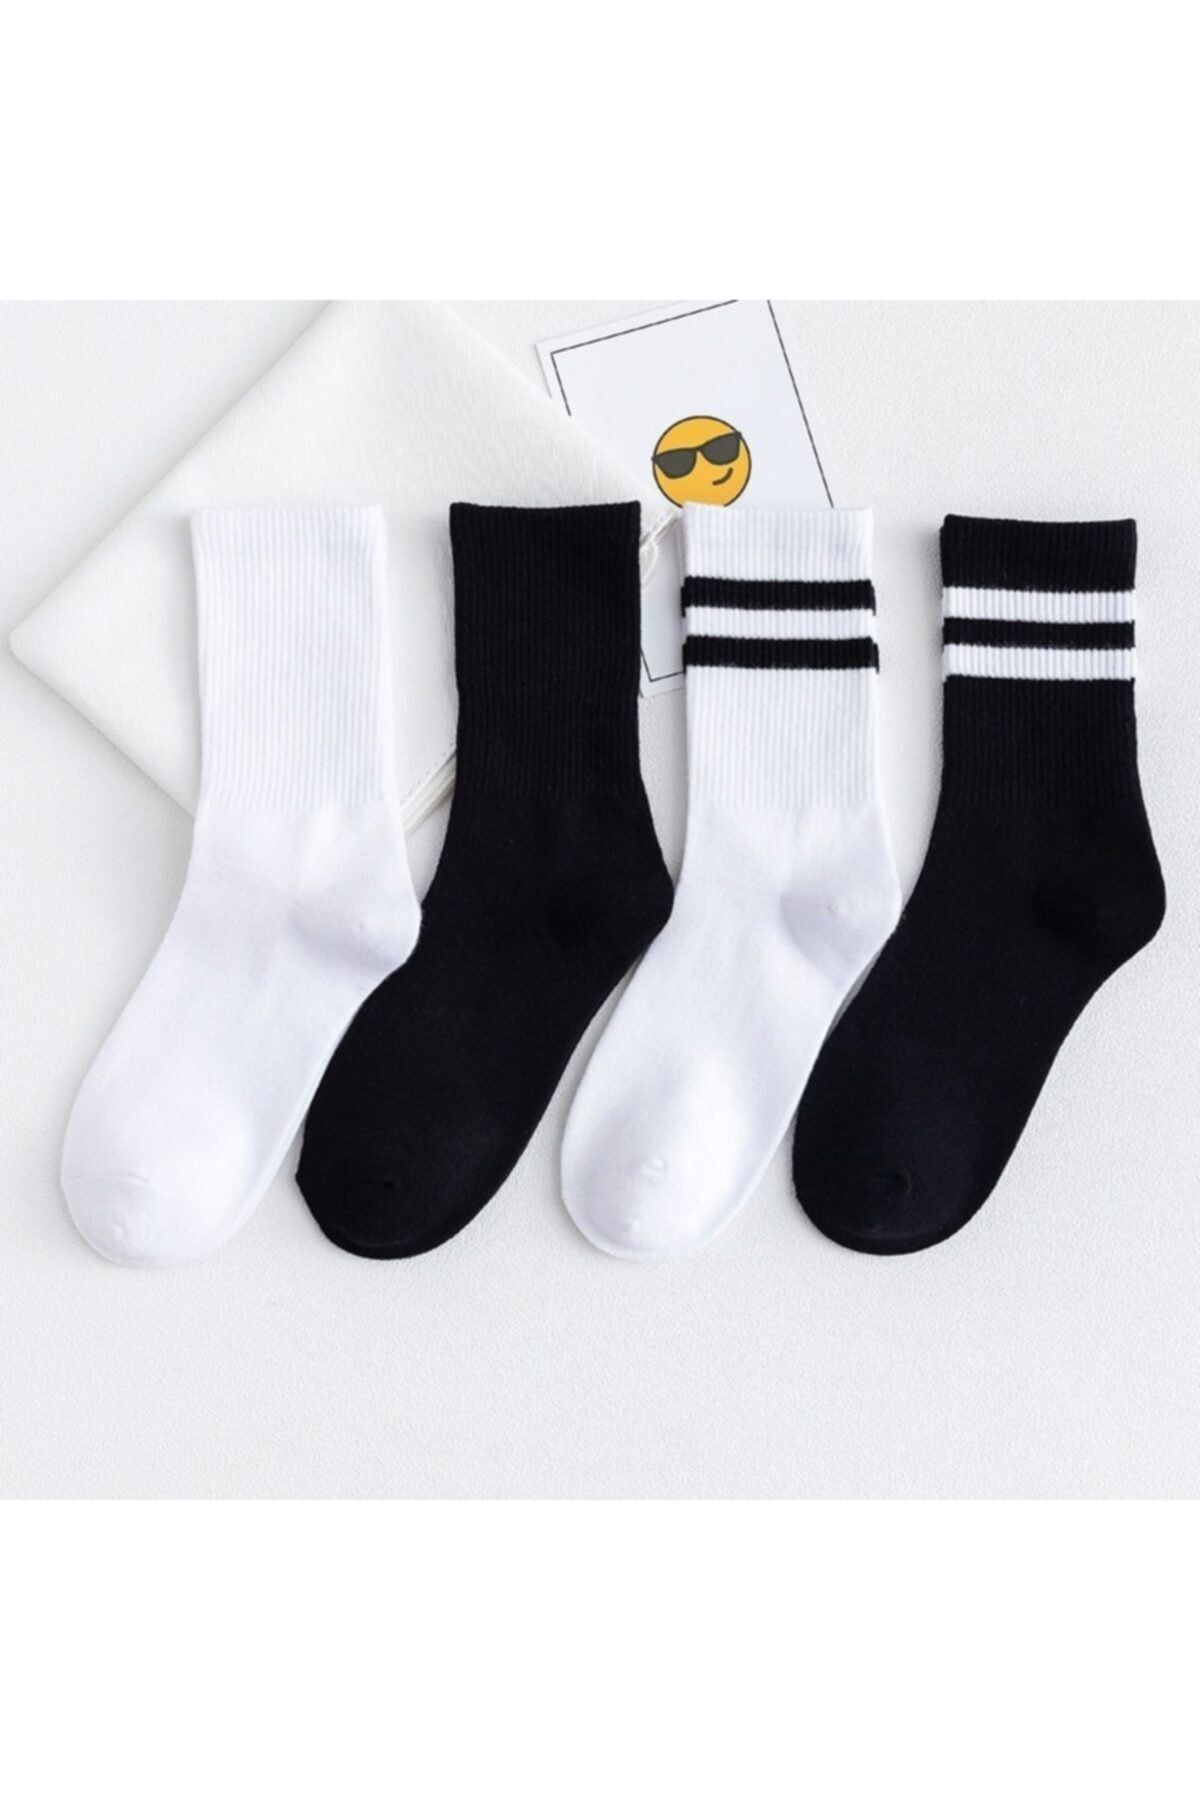 çorapmanya 6' Lı Paket Siyah-beyaz Çizgili -çizgisiz Pamuklu Kolej Tenis Çorap